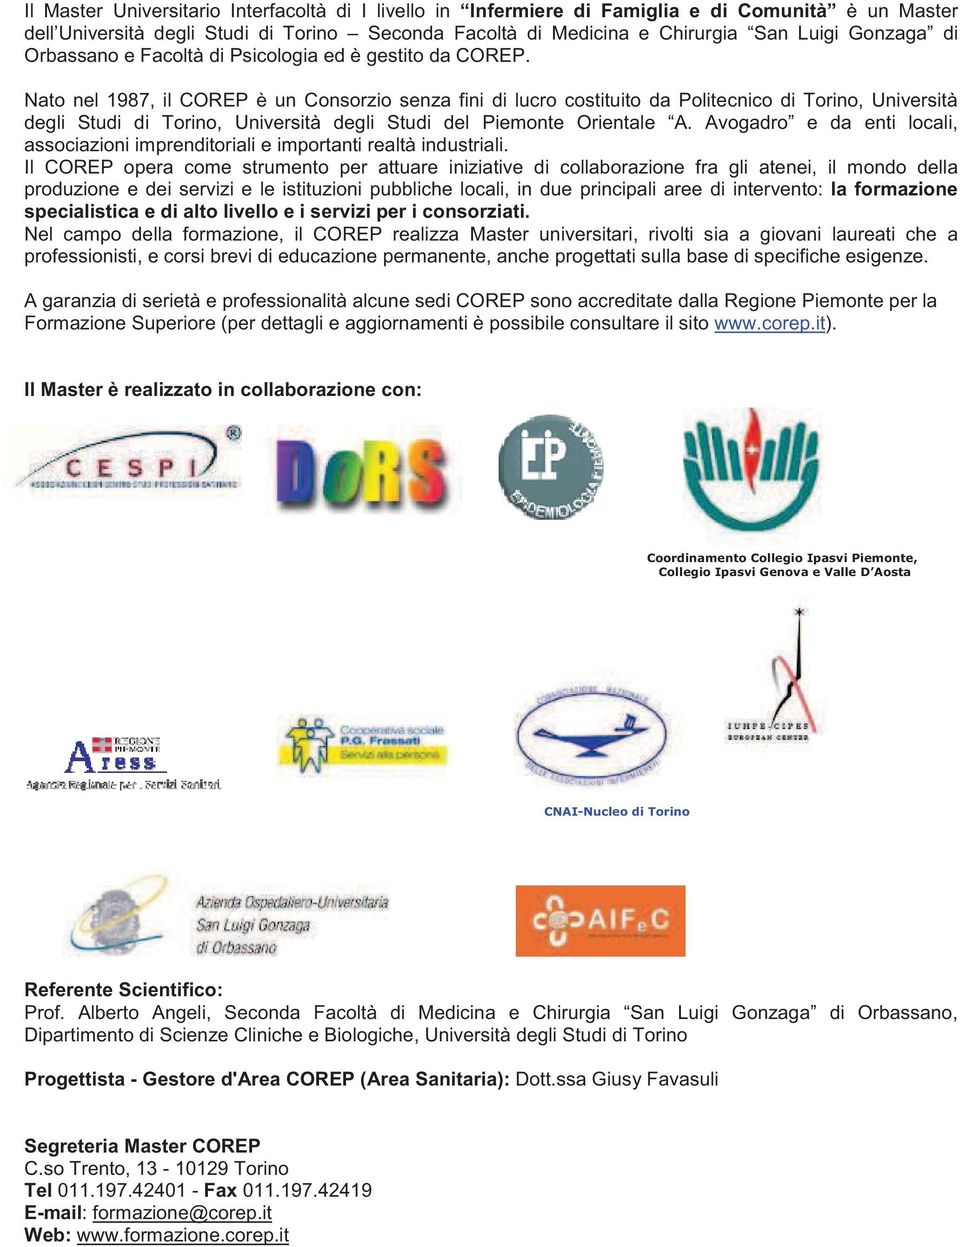 Nato nel 1987, il COREP è un Consorzio senza fini di lucro costituito da Politecnico di Torino, Università degli Studi di Torino, Università degli Studi del Piemonte Orientale A.